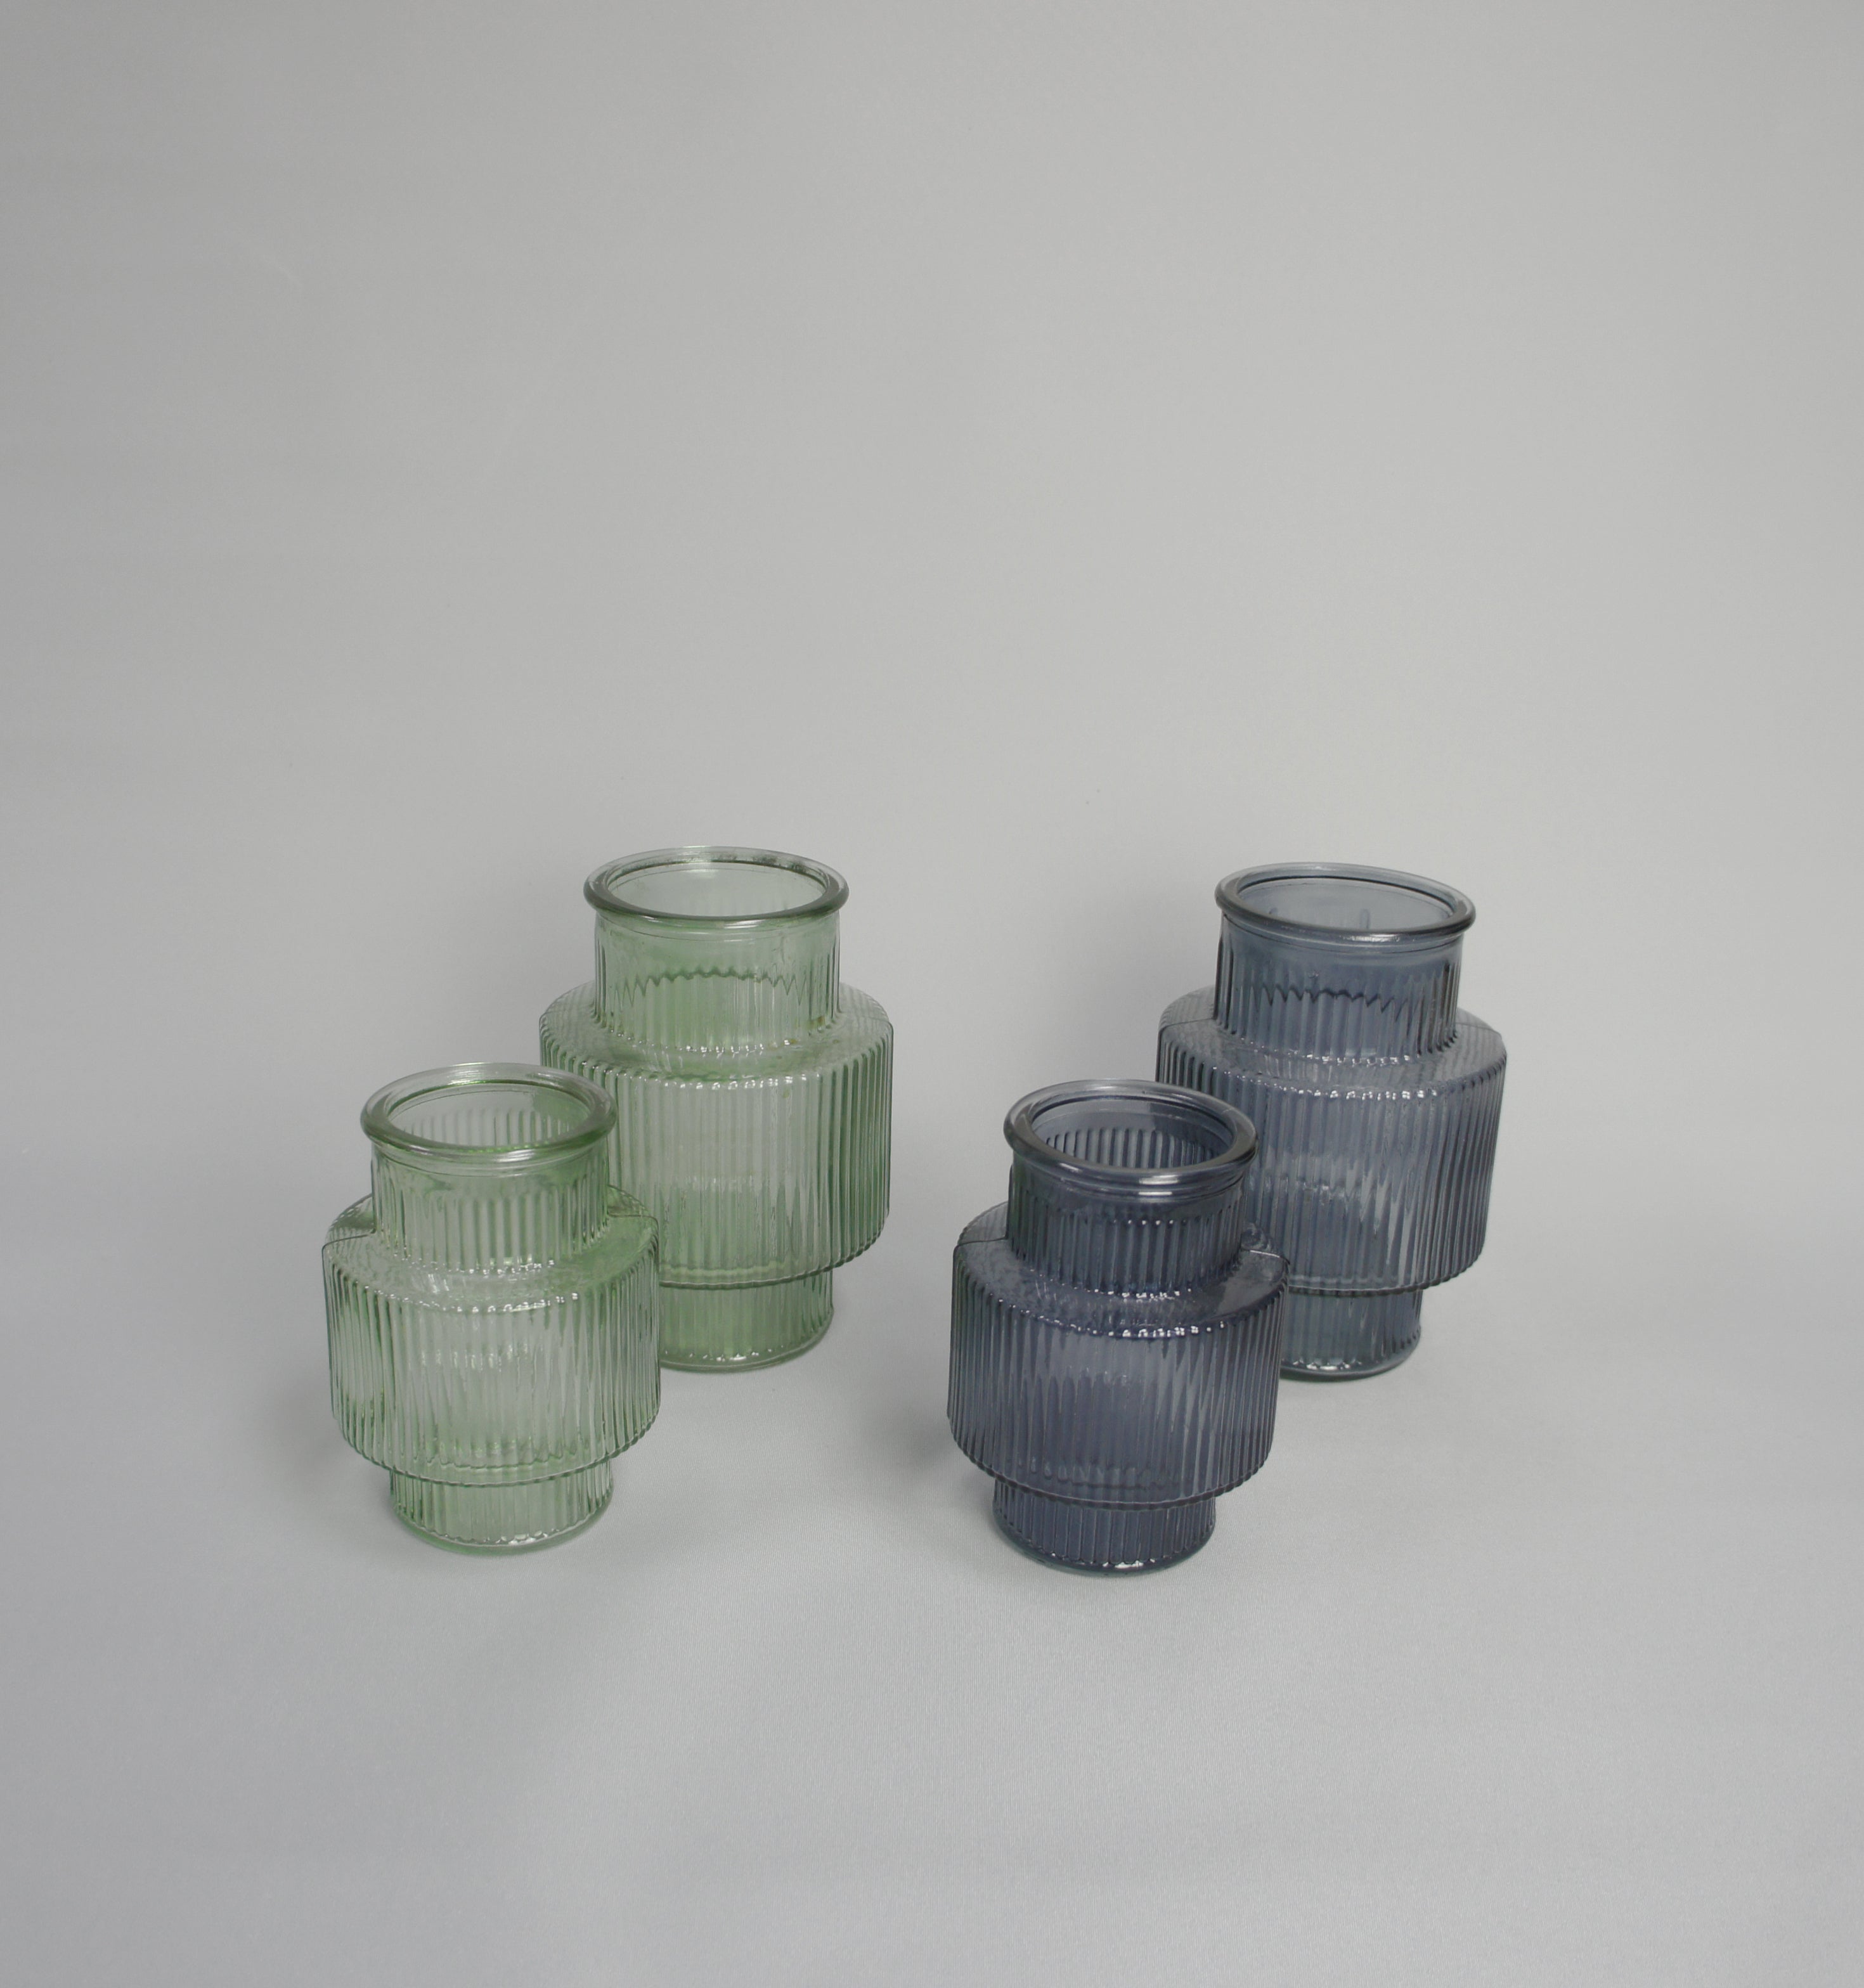 Glasvase, geriffelt, Farbe Grün und Graublau, erhältlich in 3 Größen